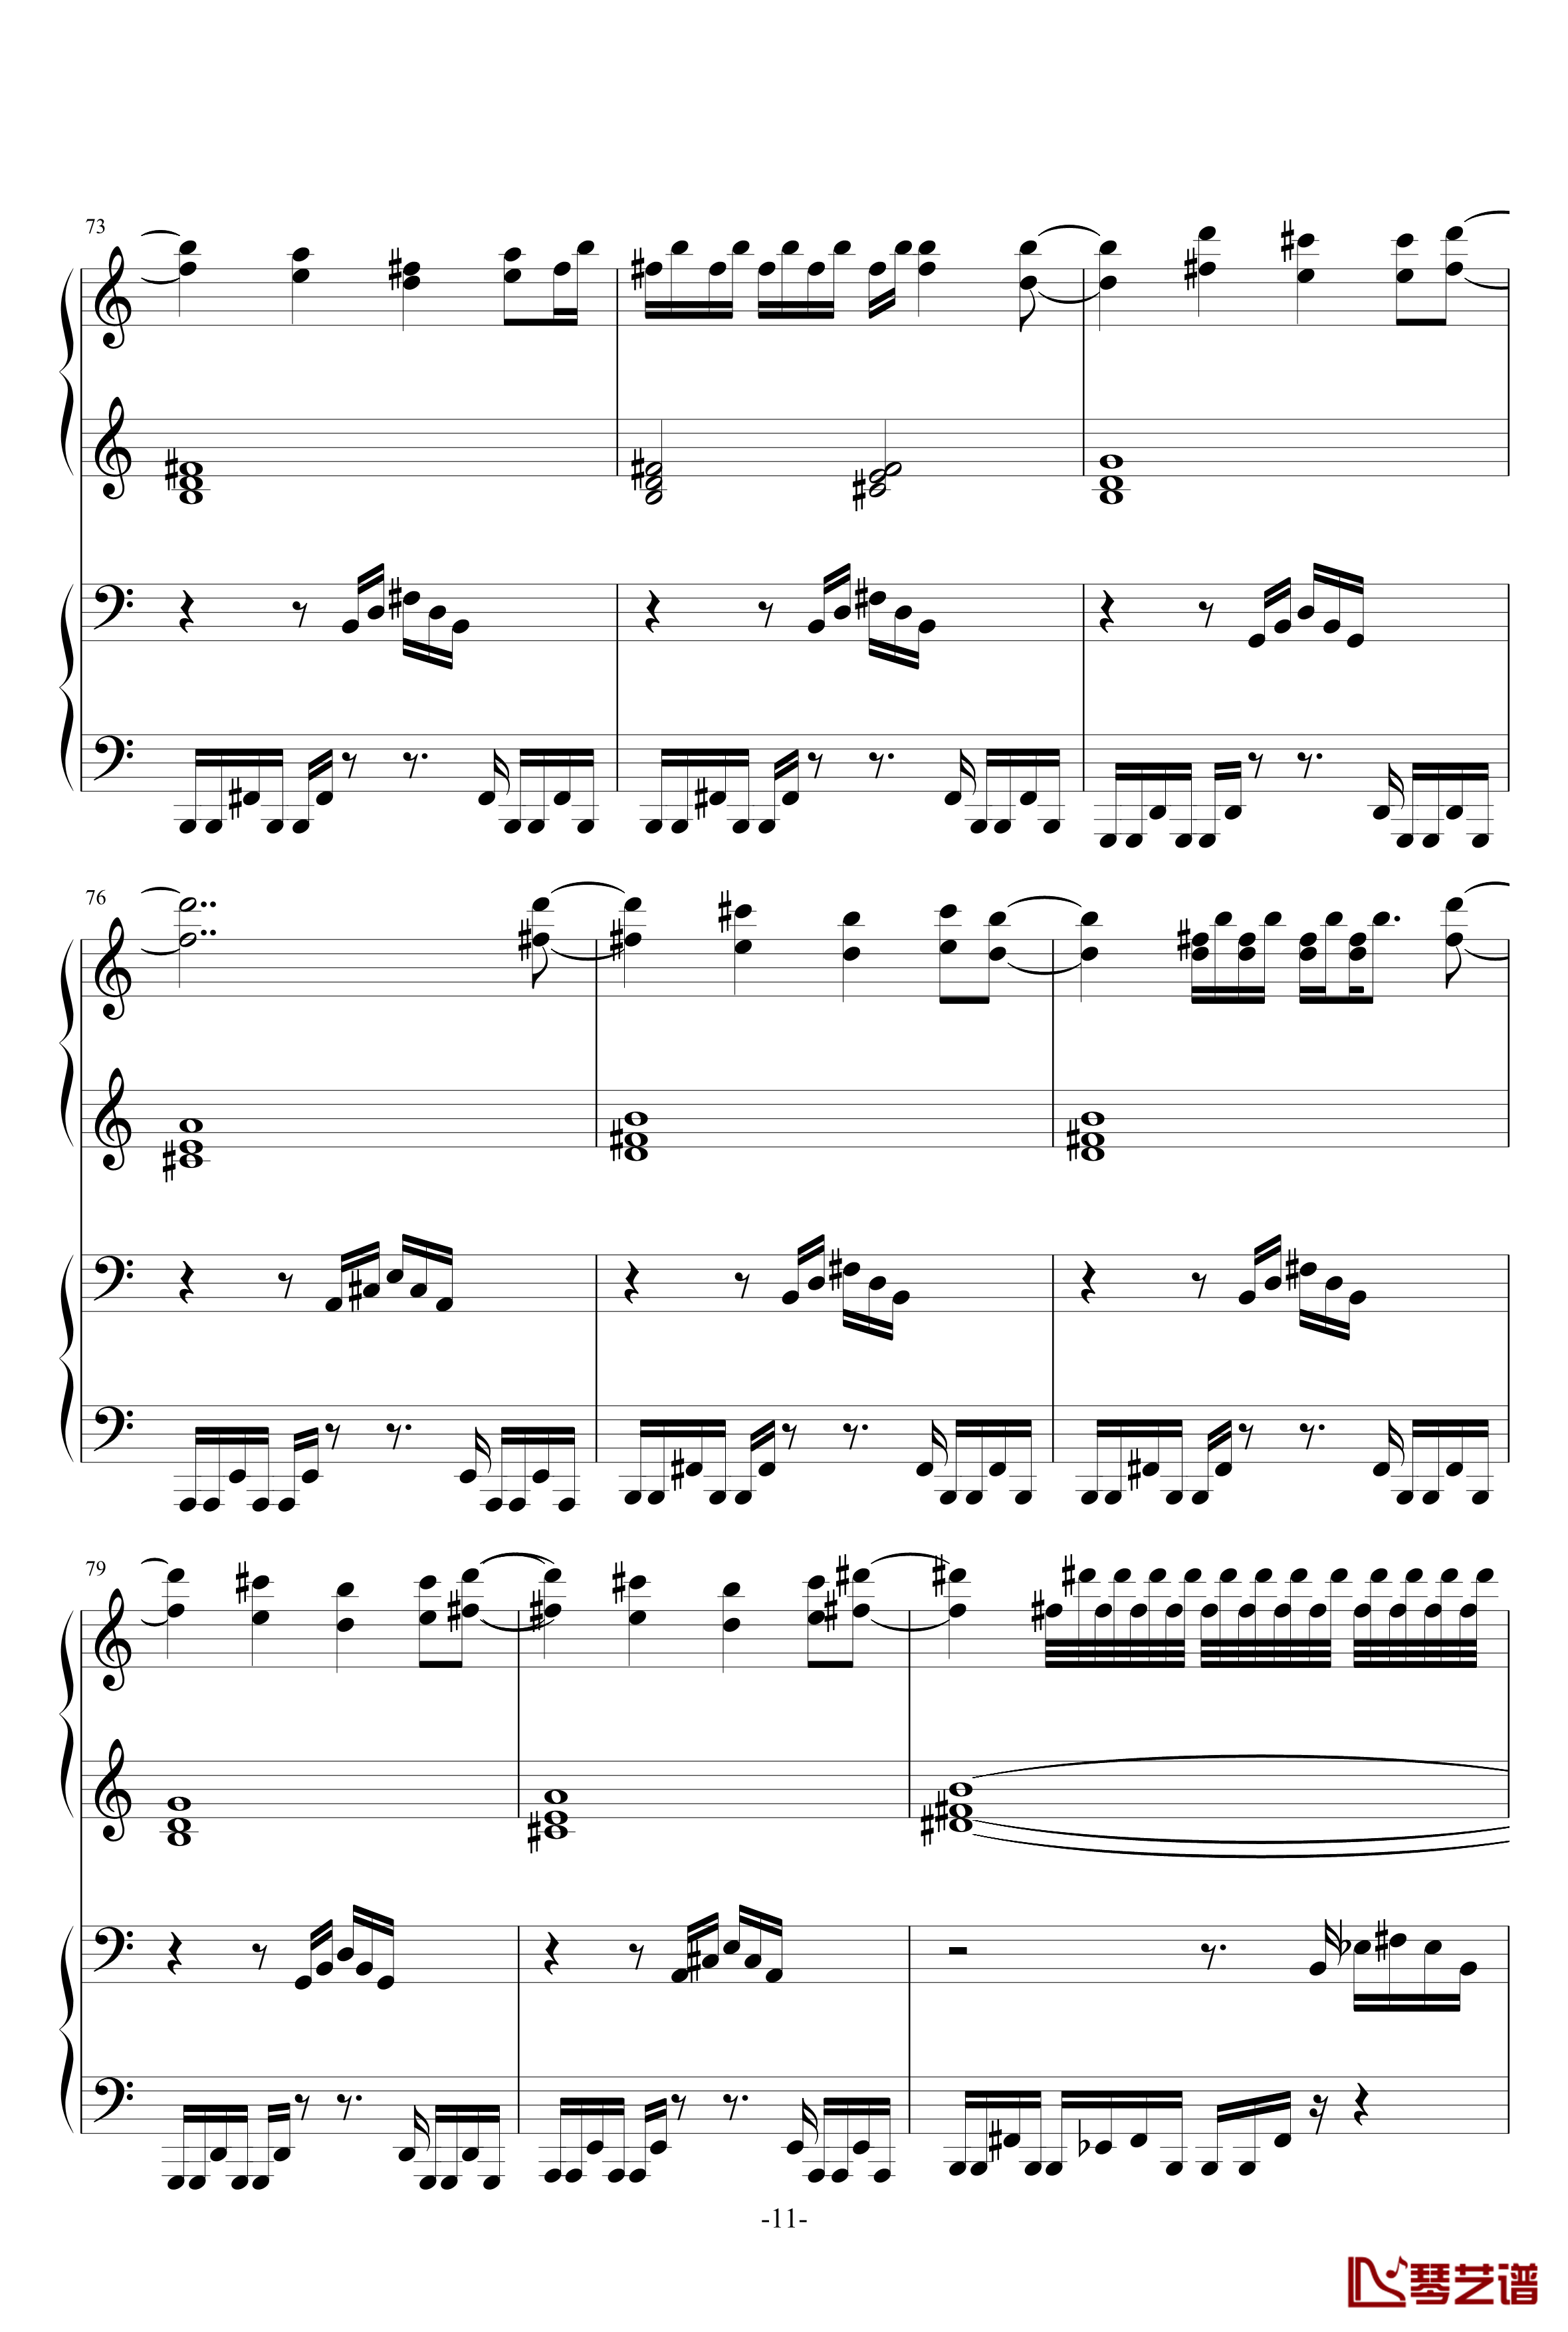 亡灵幻想曲原版人类可弹钢琴谱-鬼畜11